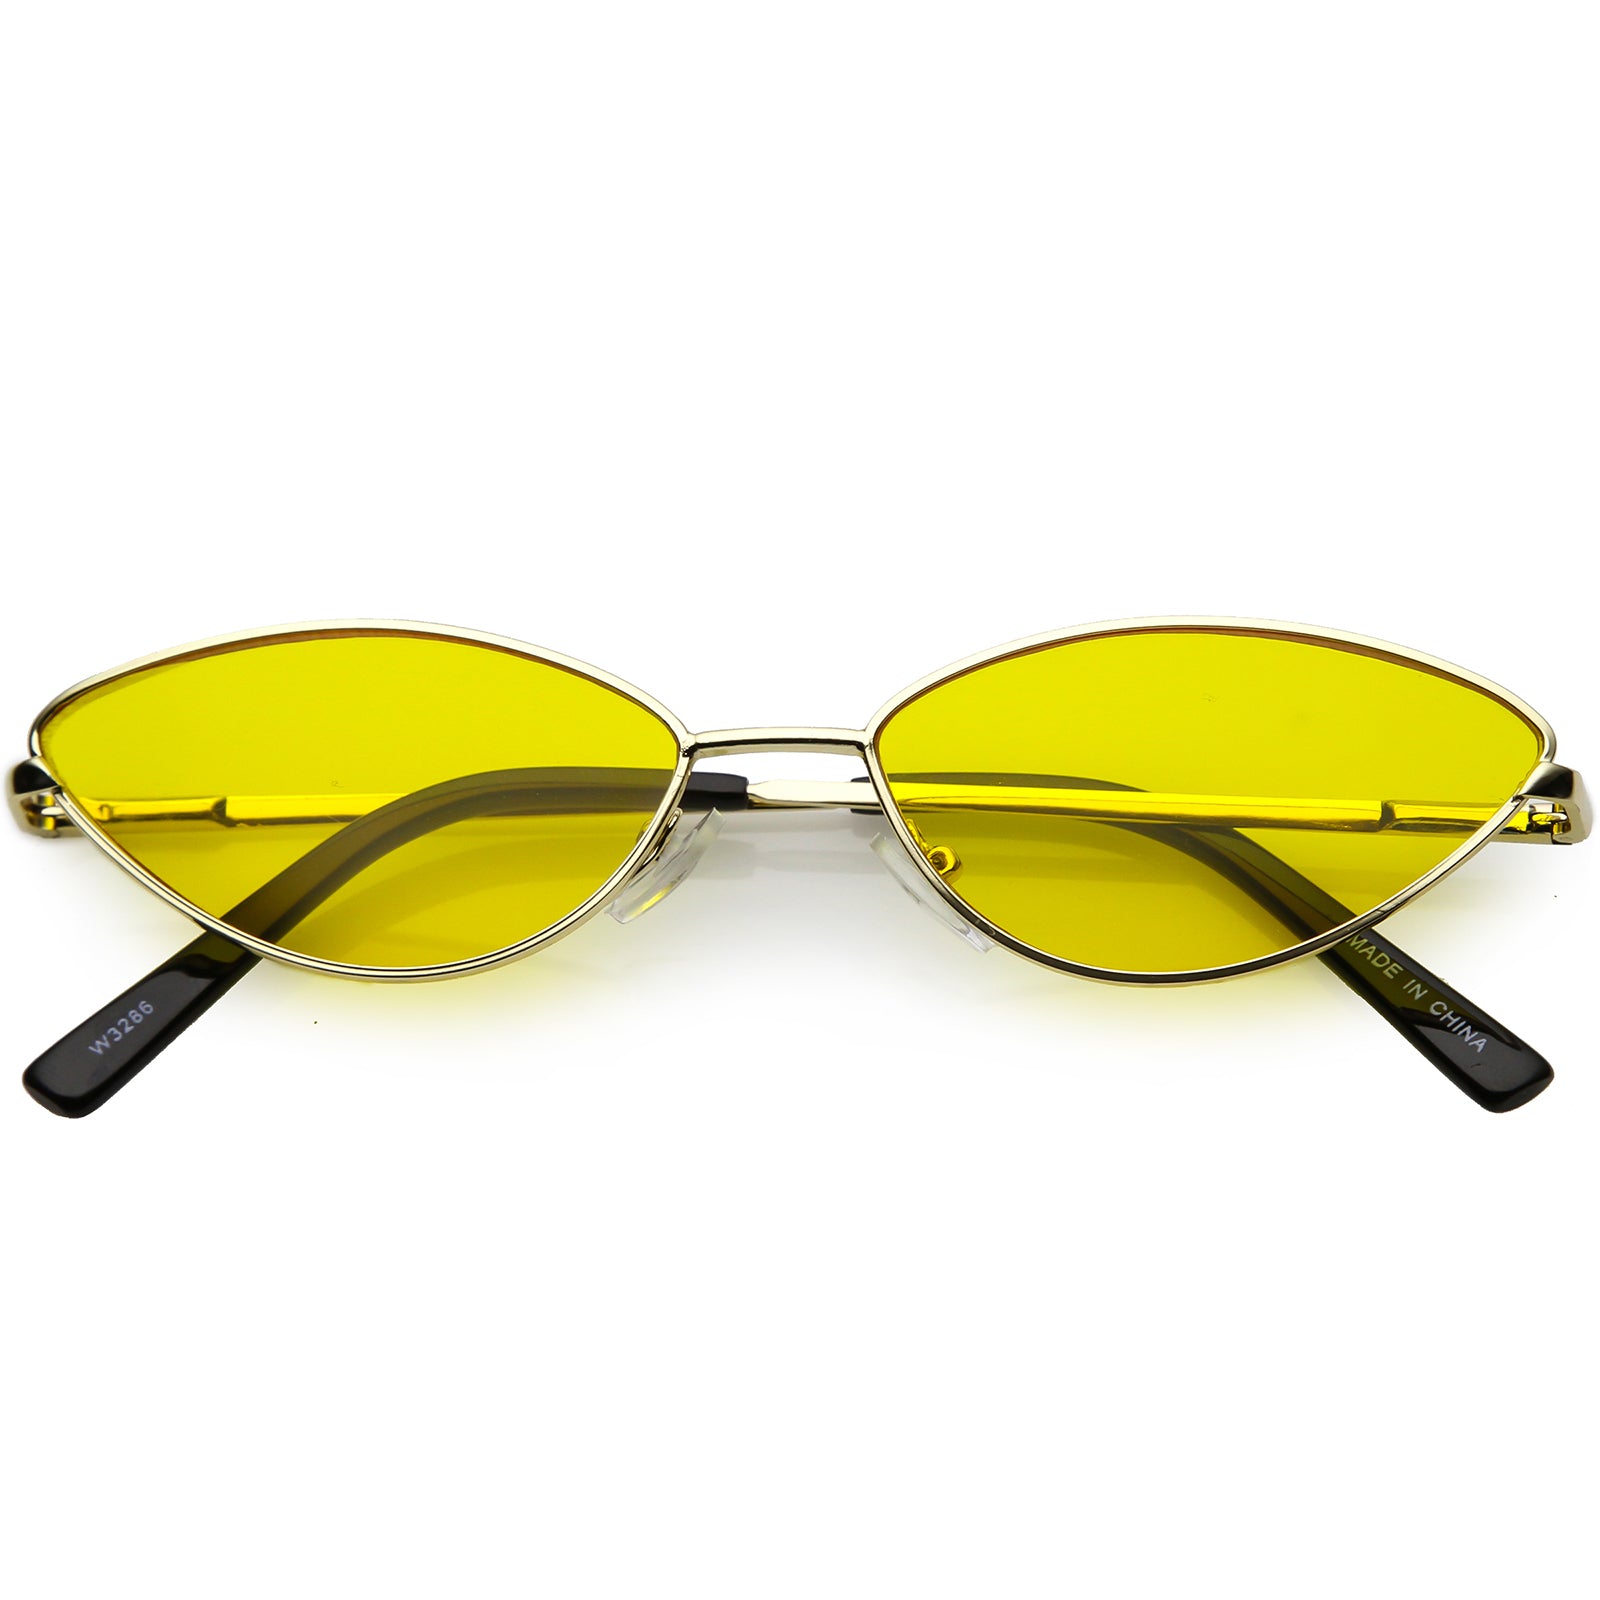 Luminara Women's Fashion Retro Round Cat Eye Sunglasses